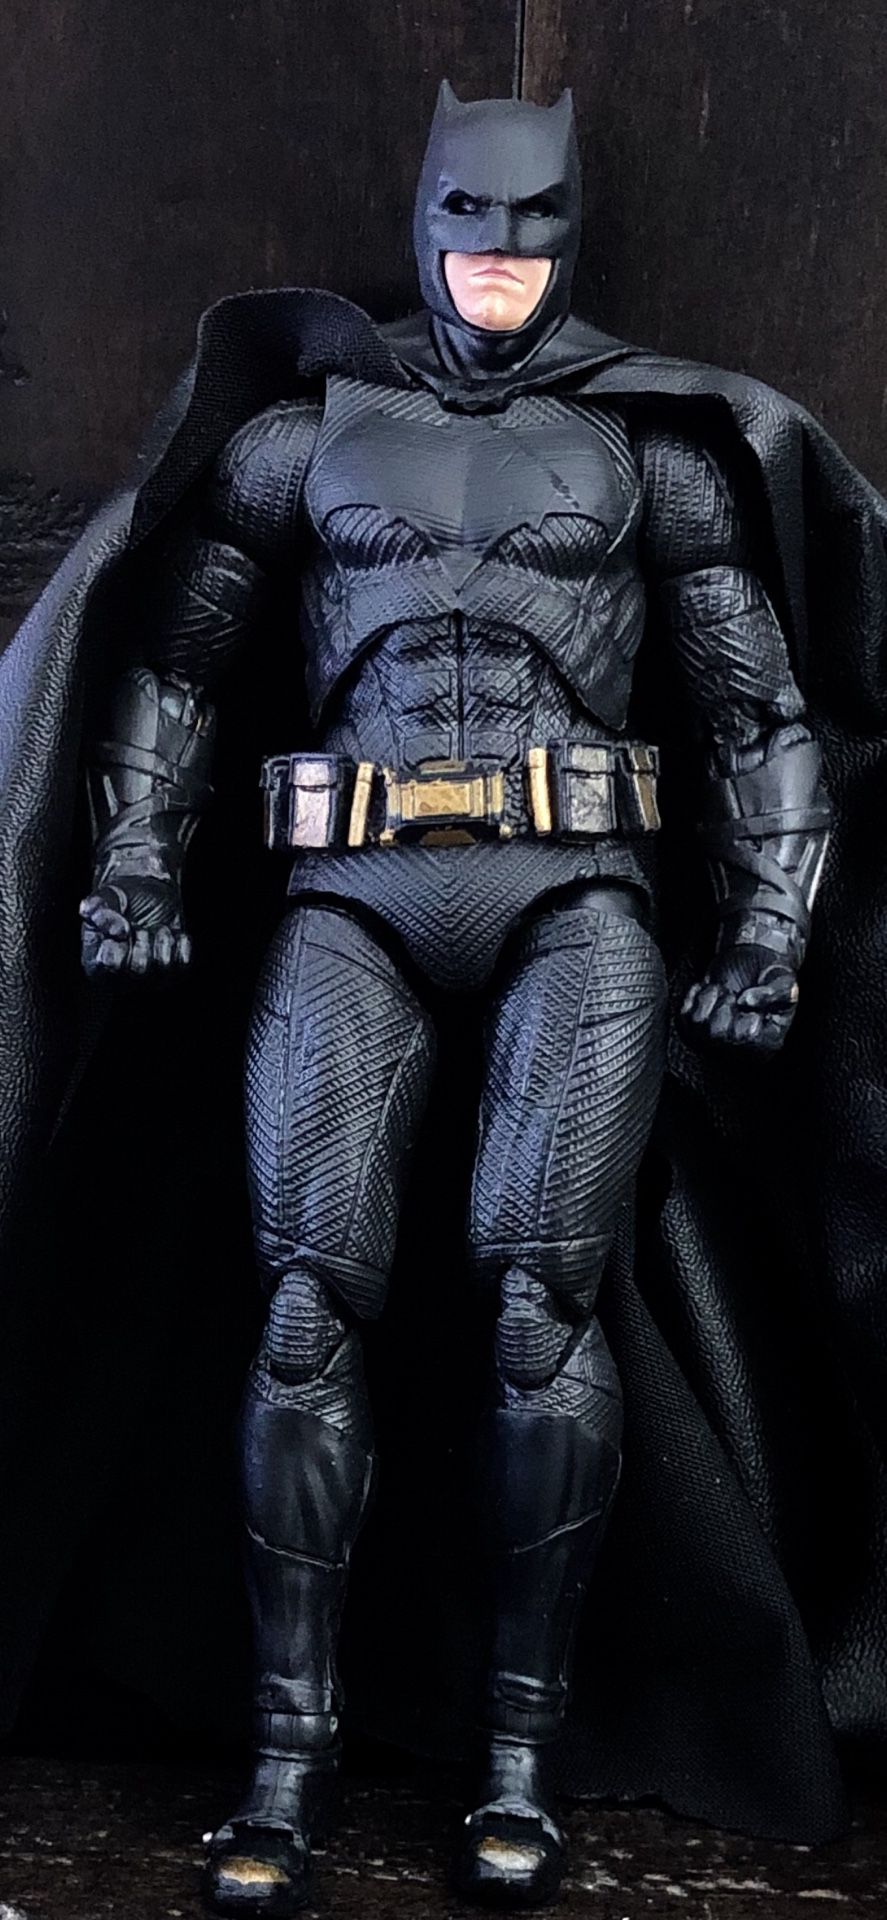 Batman DC comics superheroes Action figures toys statue collectibles collection